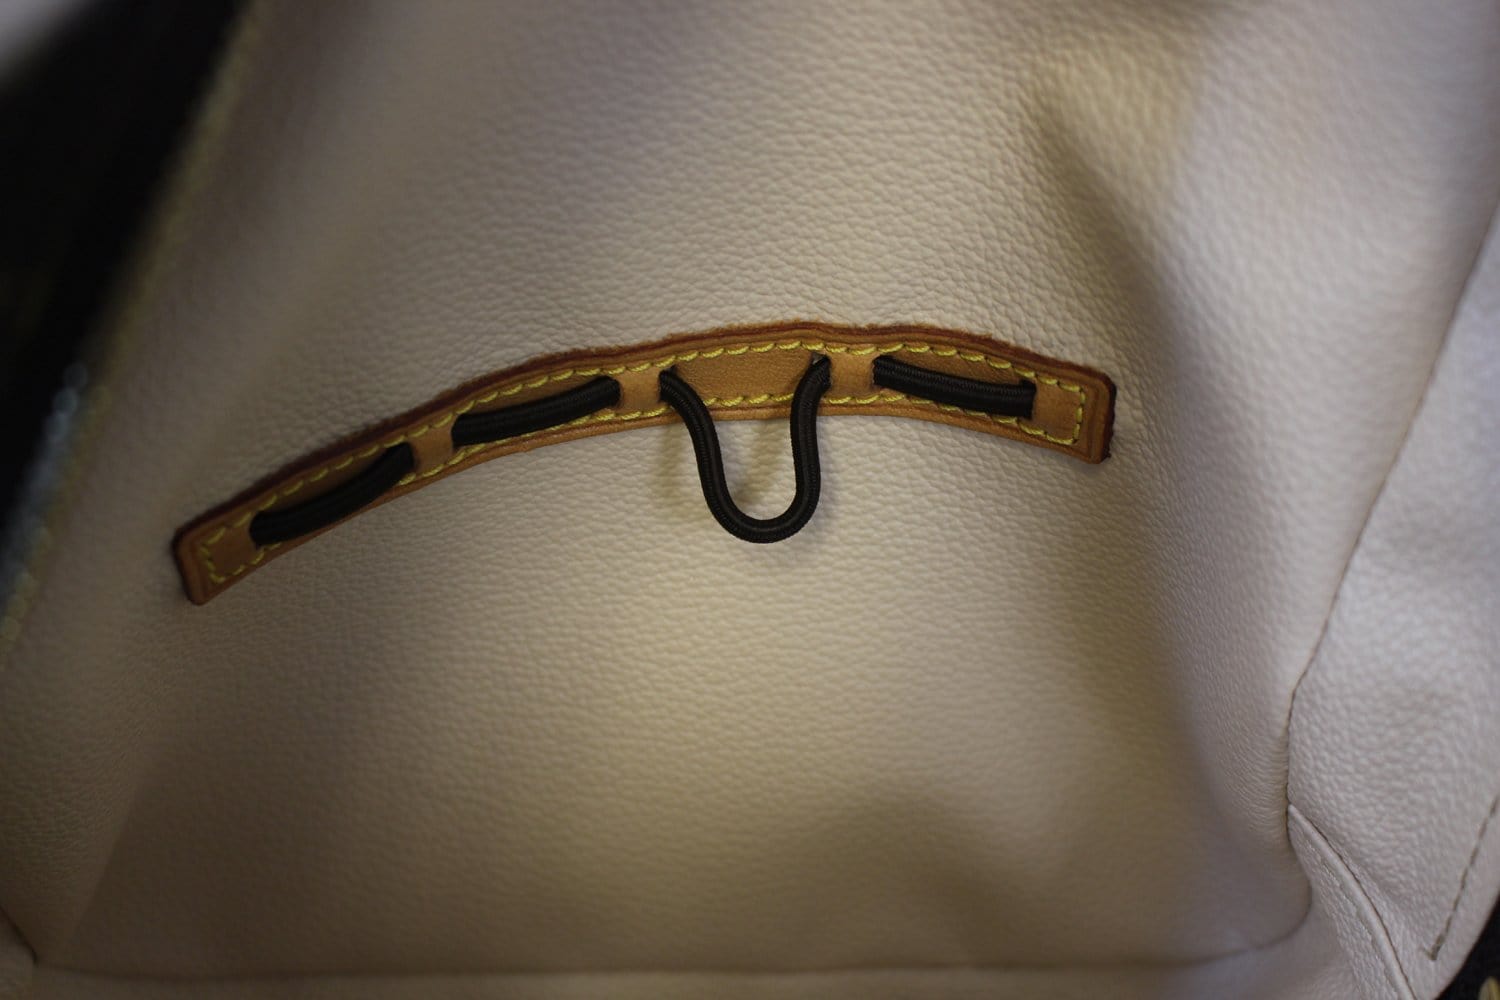 Spontini cloth handbag Louis Vuitton Brown in Cloth - 18946263